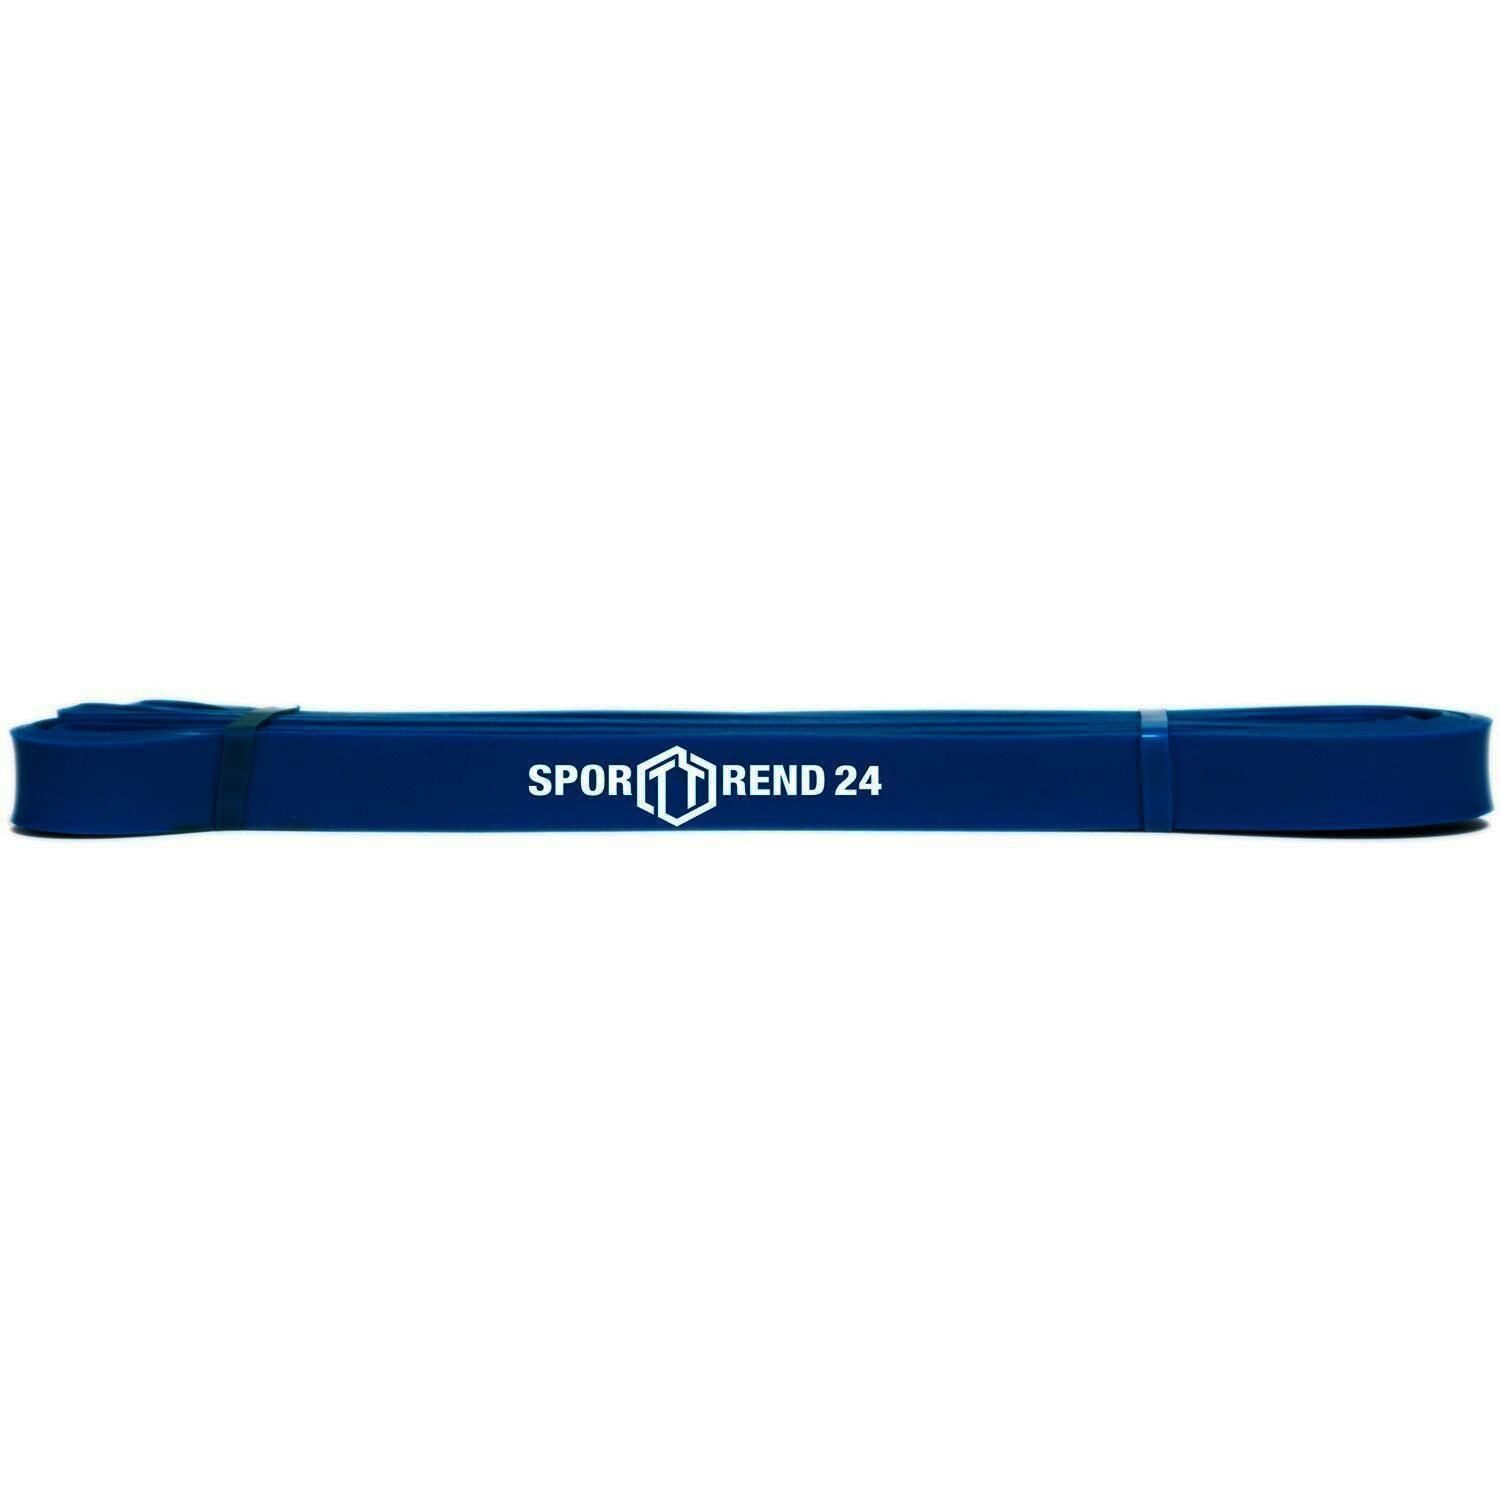 Sporttrend 24 Gymnastikbänder Blau 19mm bis 34,01 Kg, Trainingsband